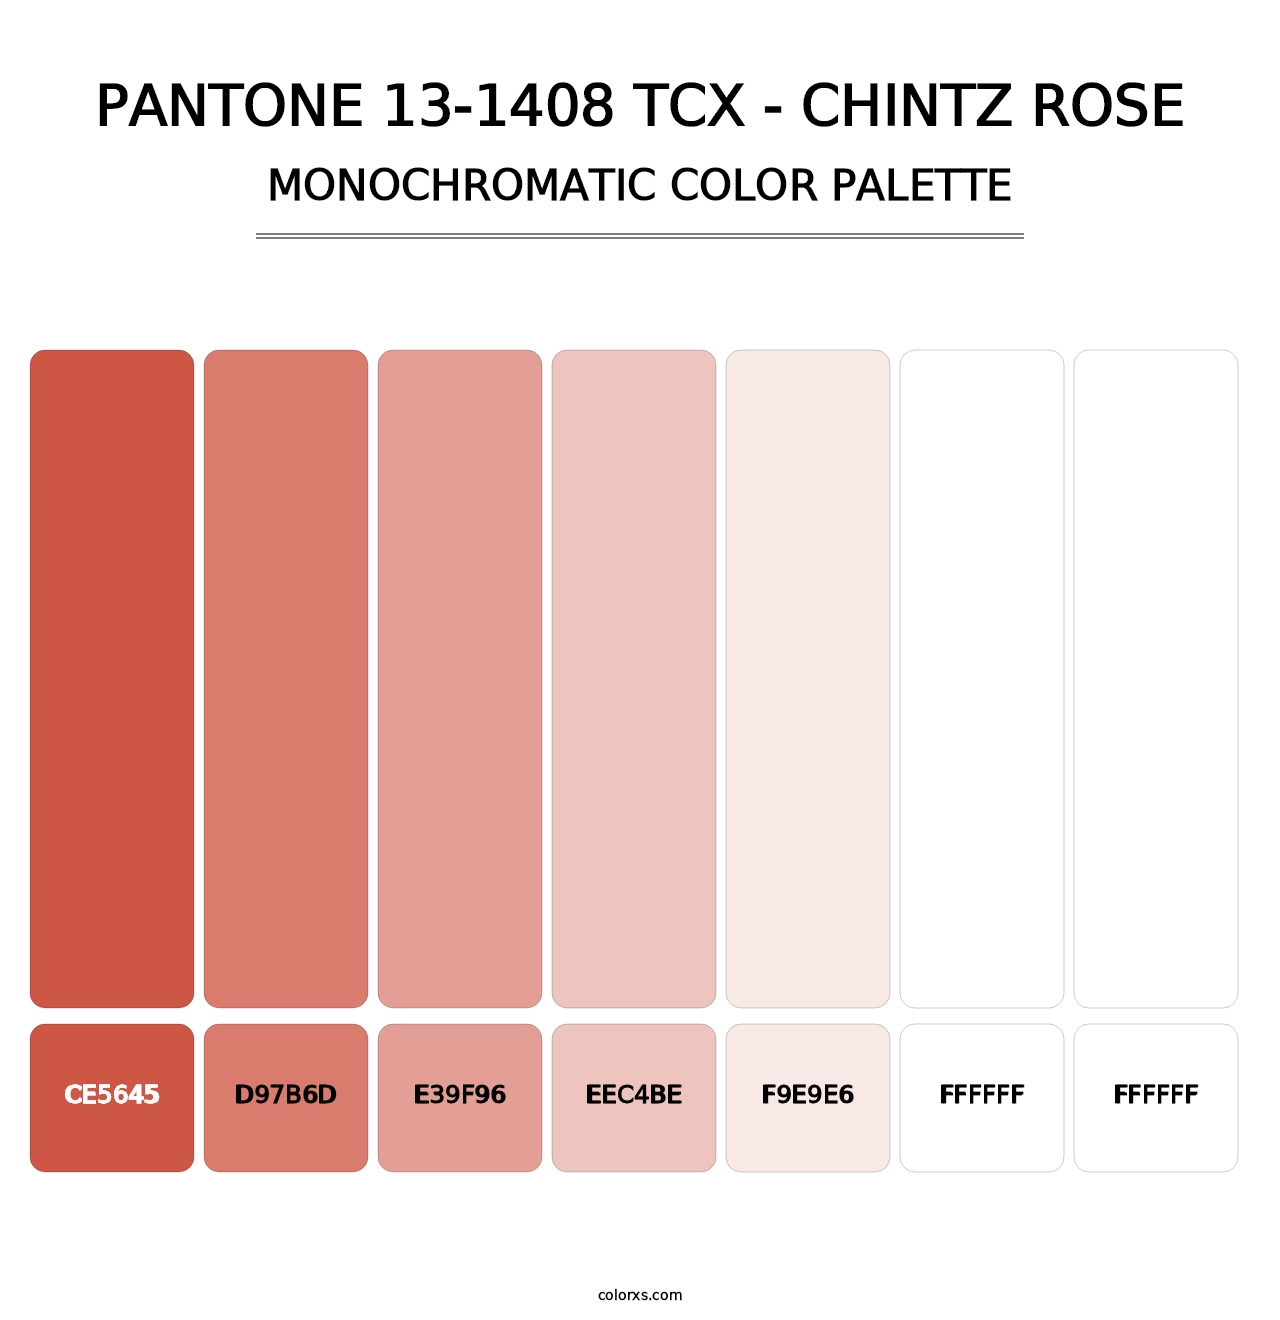 PANTONE 13-1408 TCX - Chintz Rose - Monochromatic Color Palette